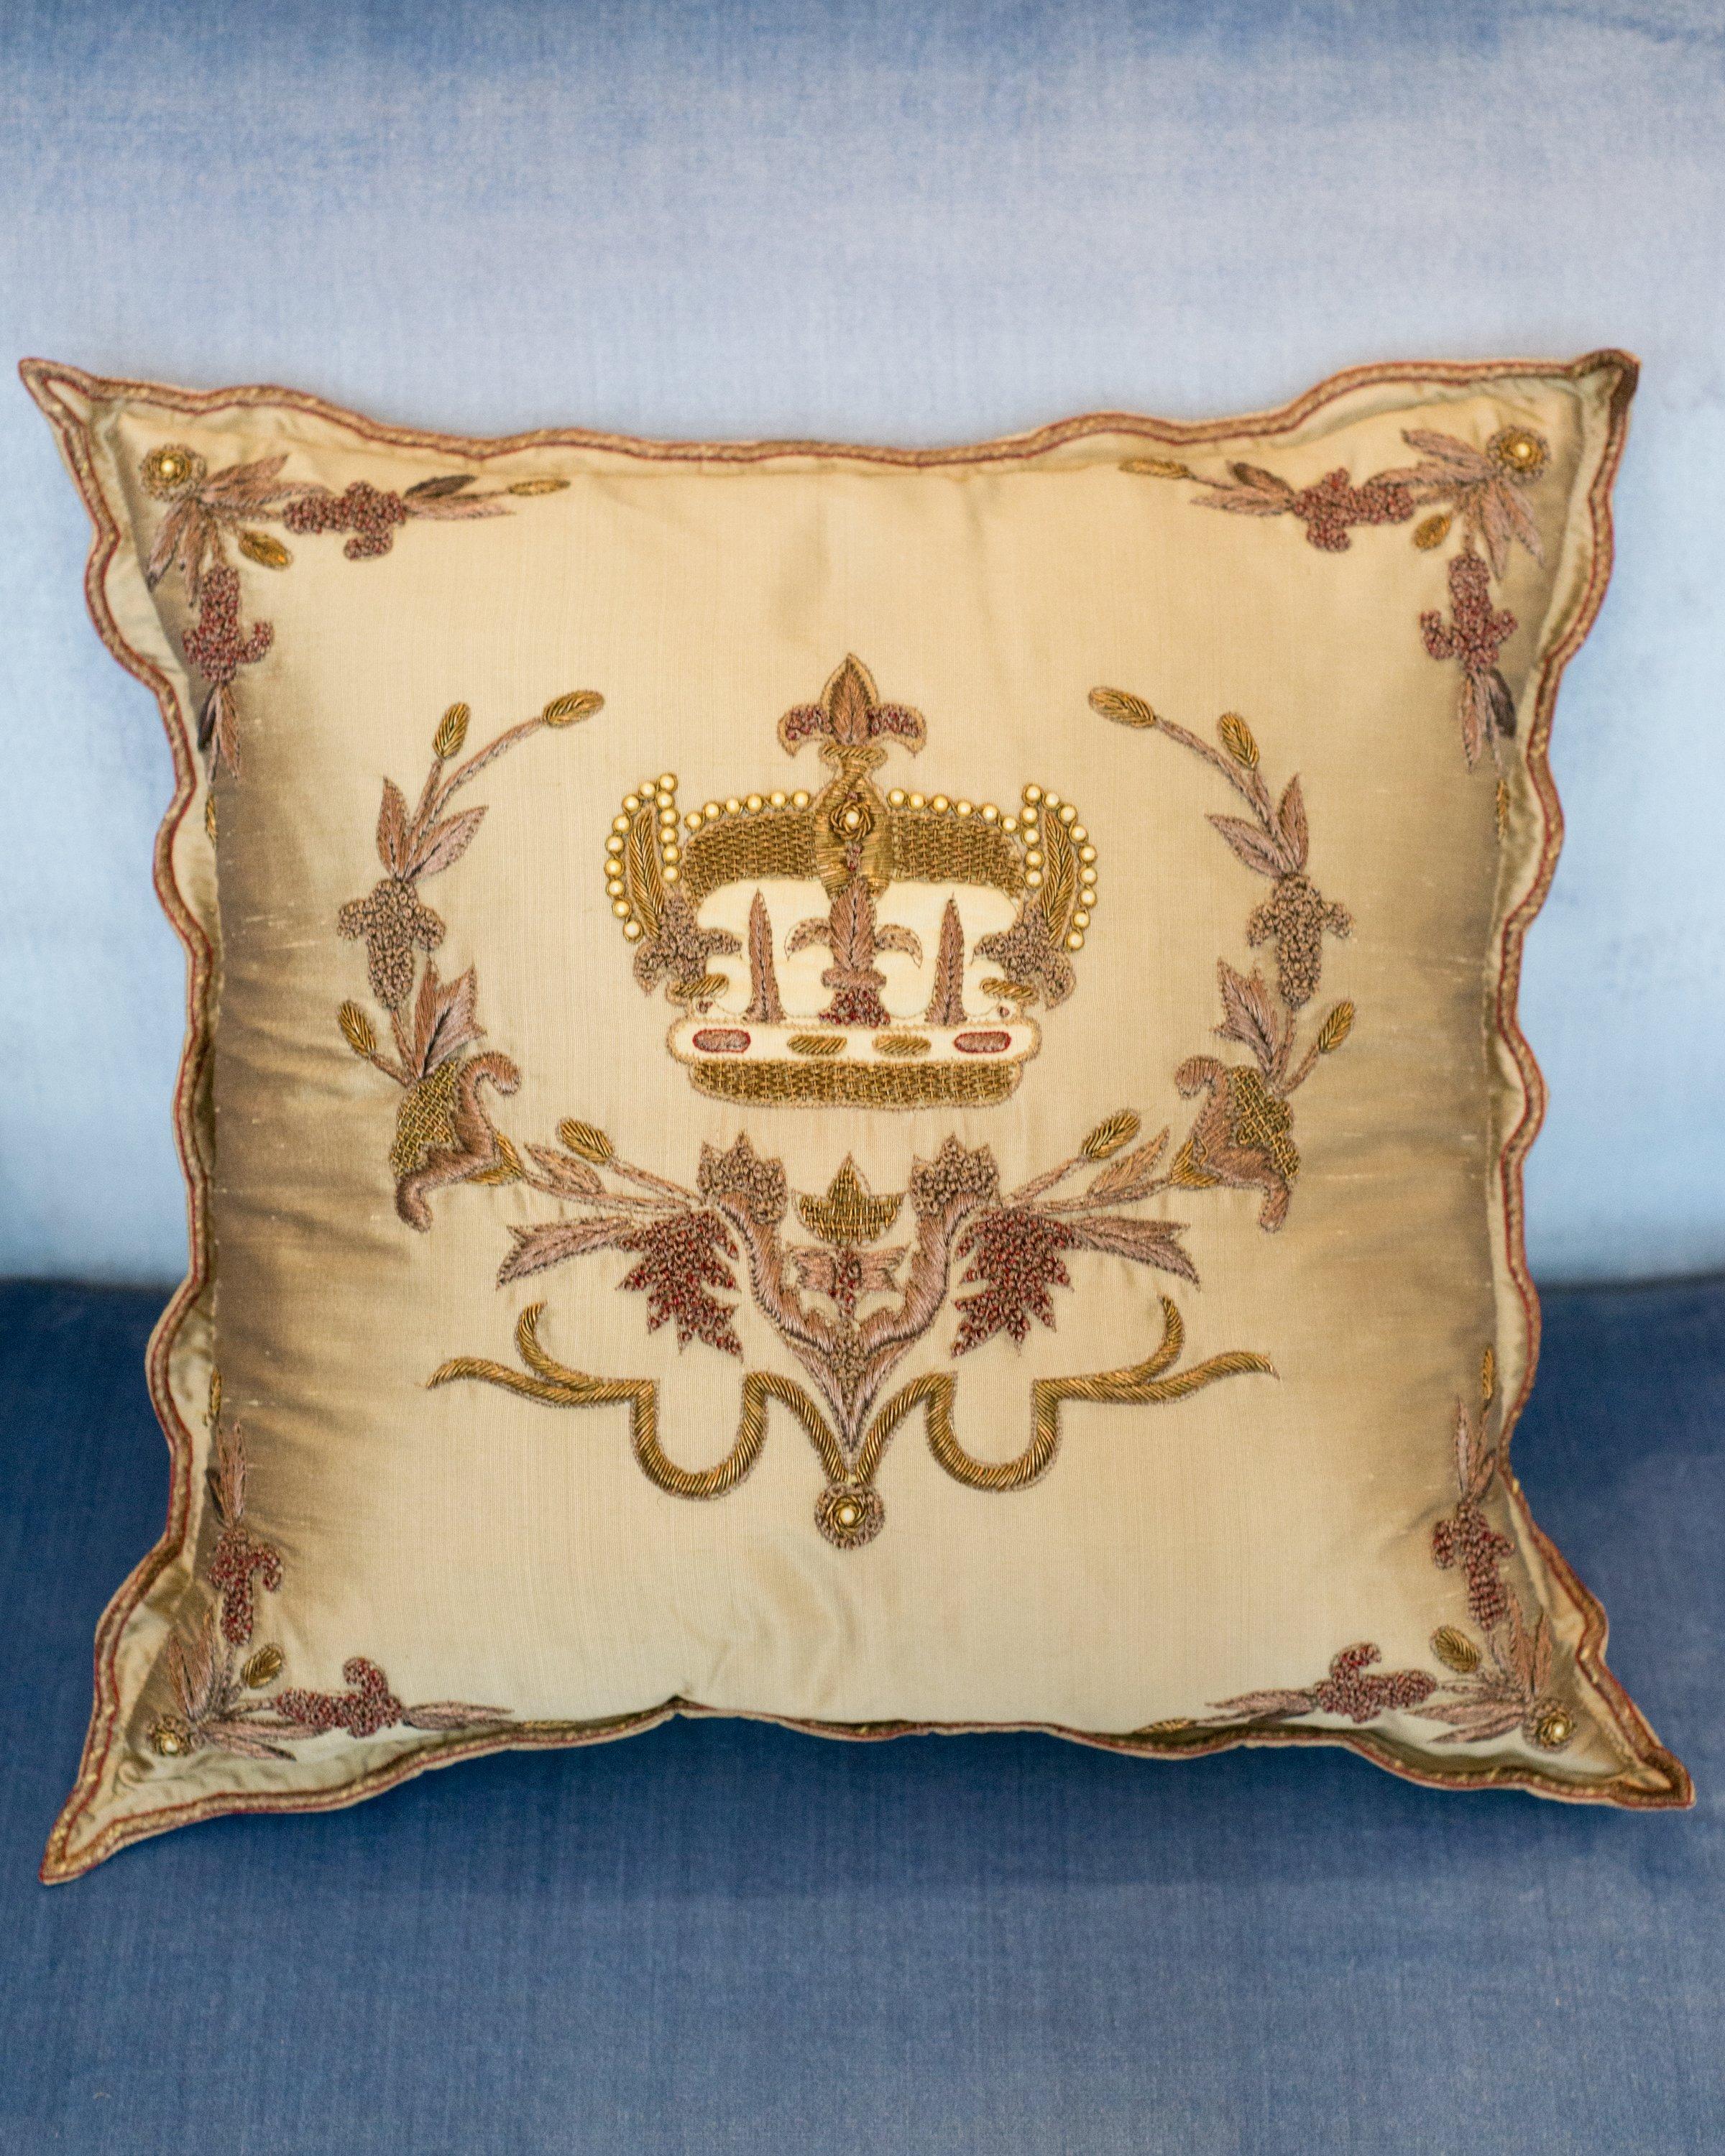 Un oreiller contemporain en soie dorée avec une couronne et un rebord brodés métalliques, fabriqué en Italie.